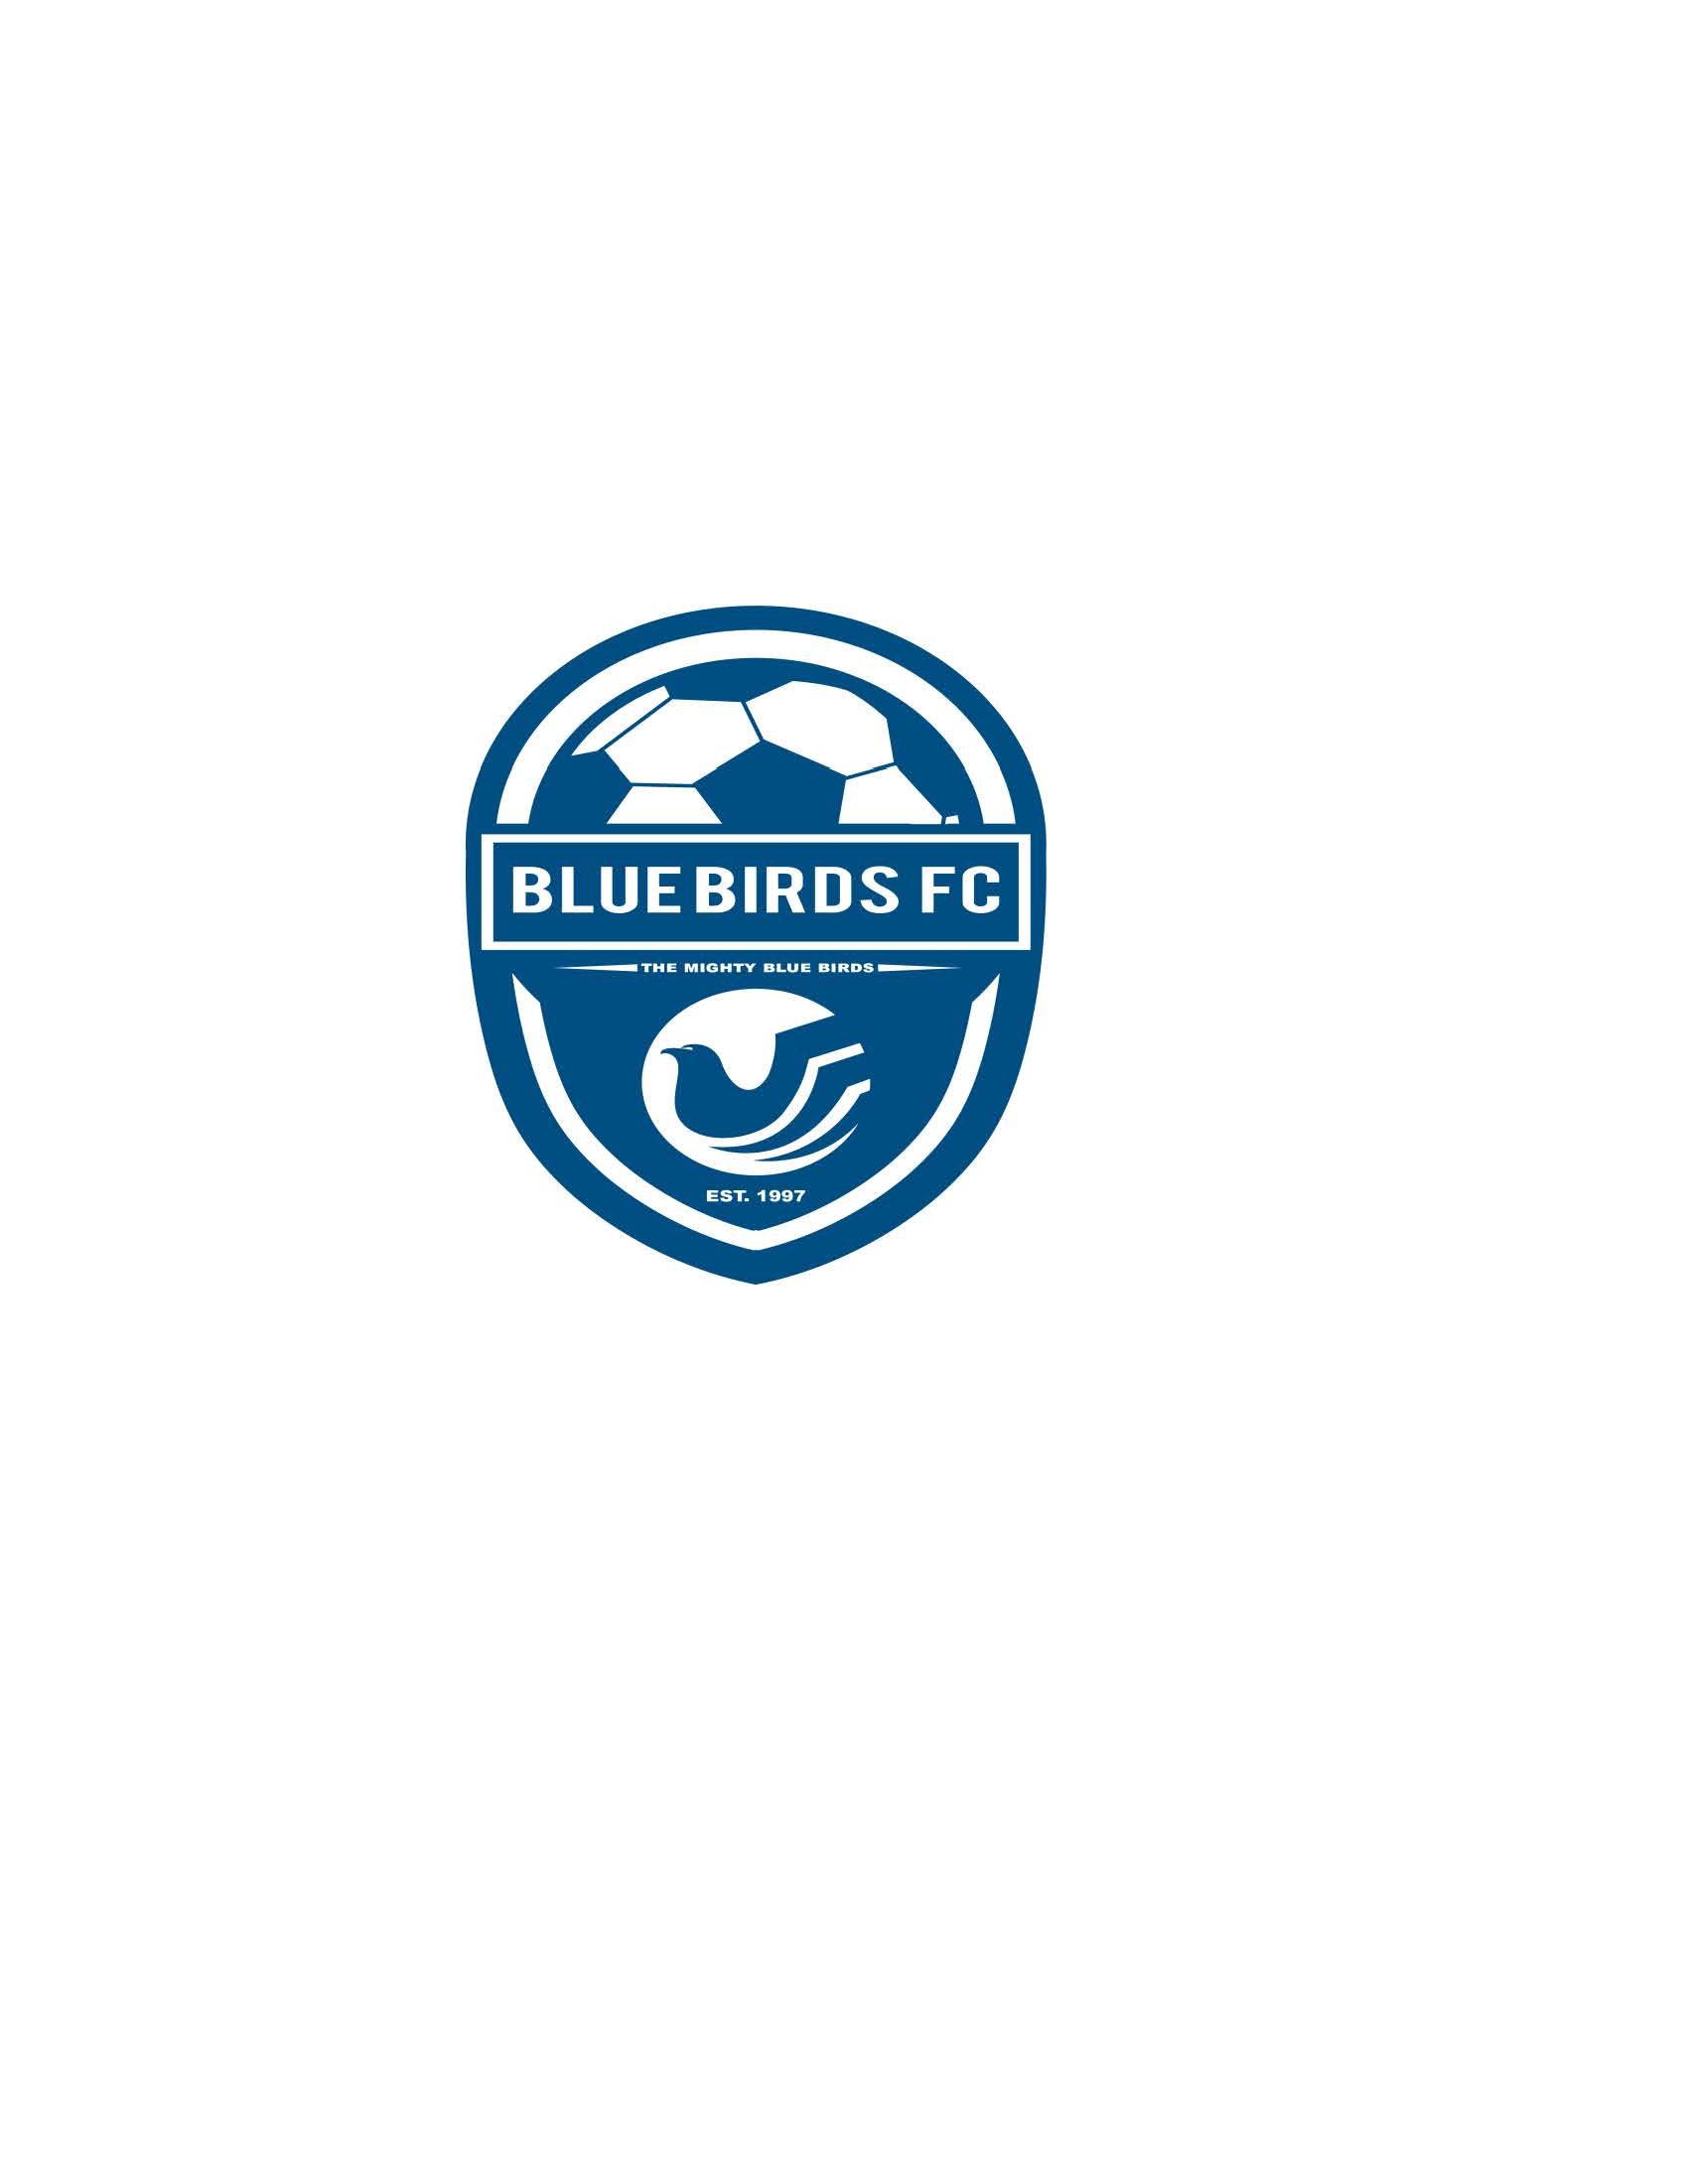 Blue Birds Football Club (SL)